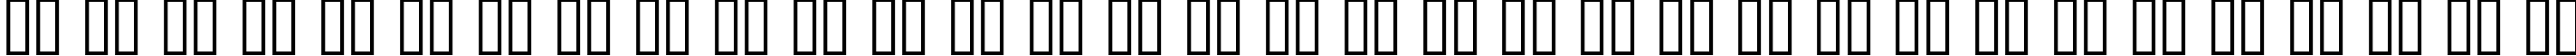 Пример написания русского алфавита шрифтом Schindler Small Caps